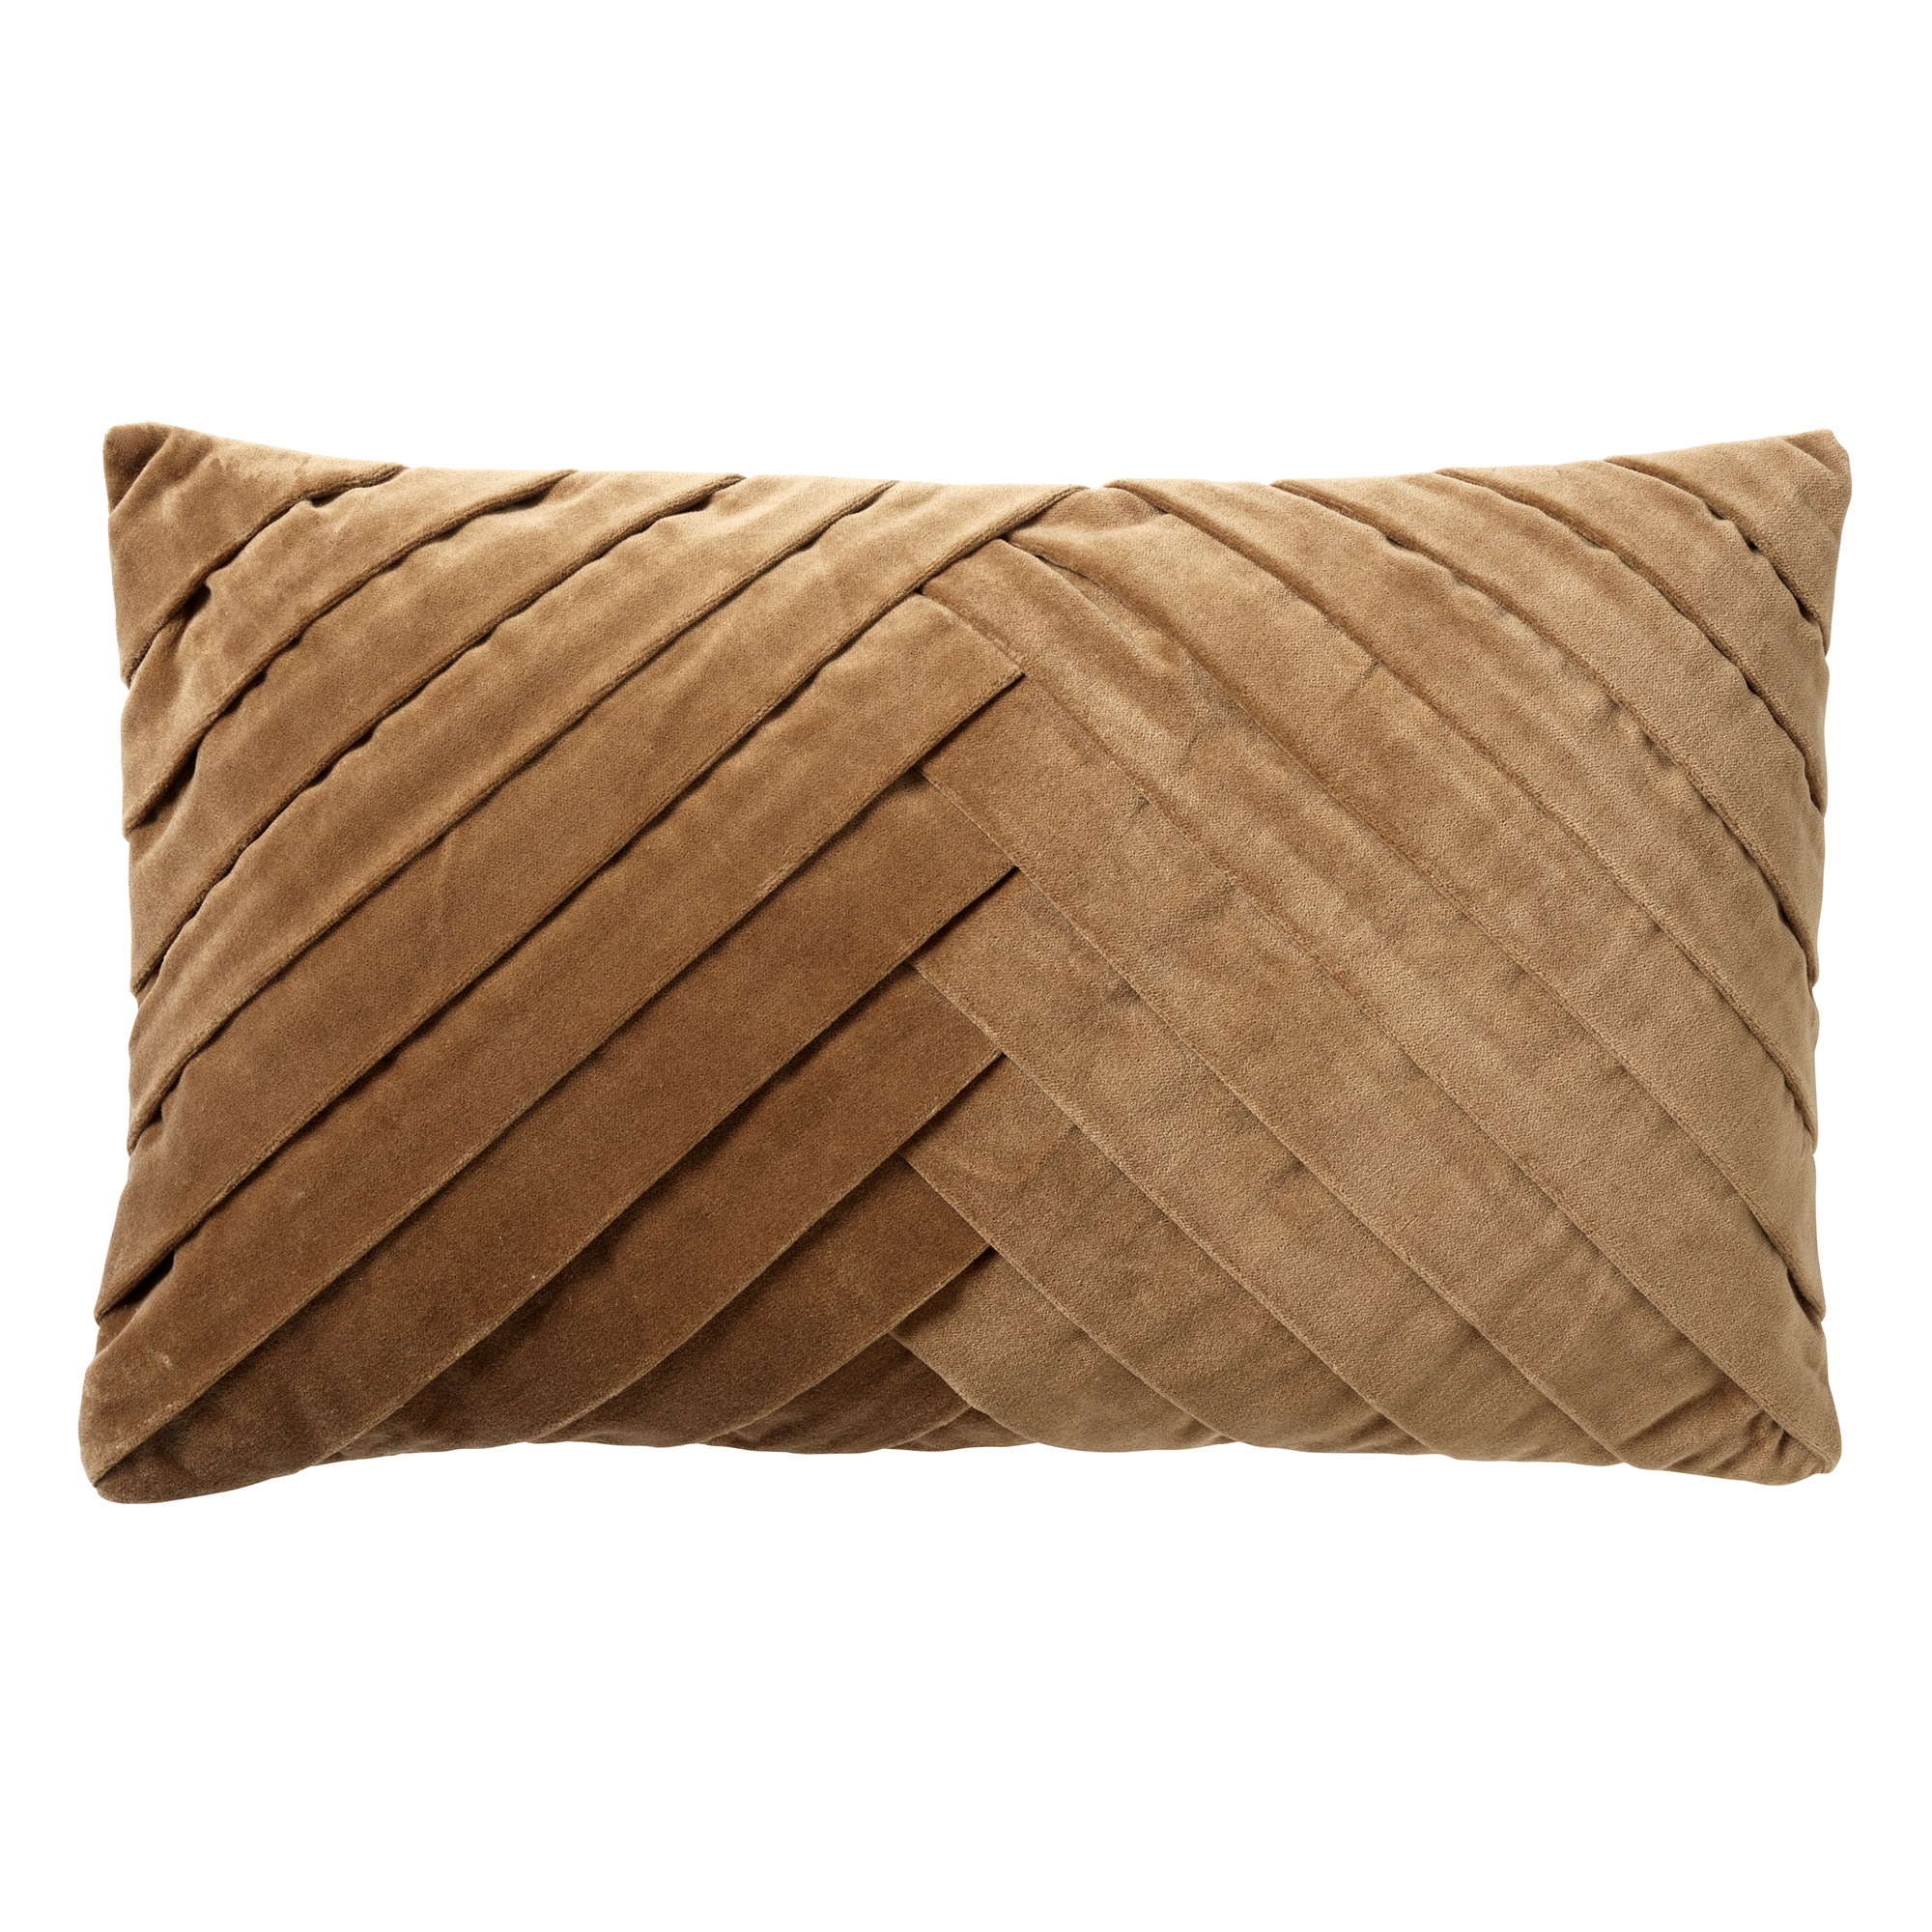 FEMM - Cushion cover 30x50 cm Tobacco Brown - brown